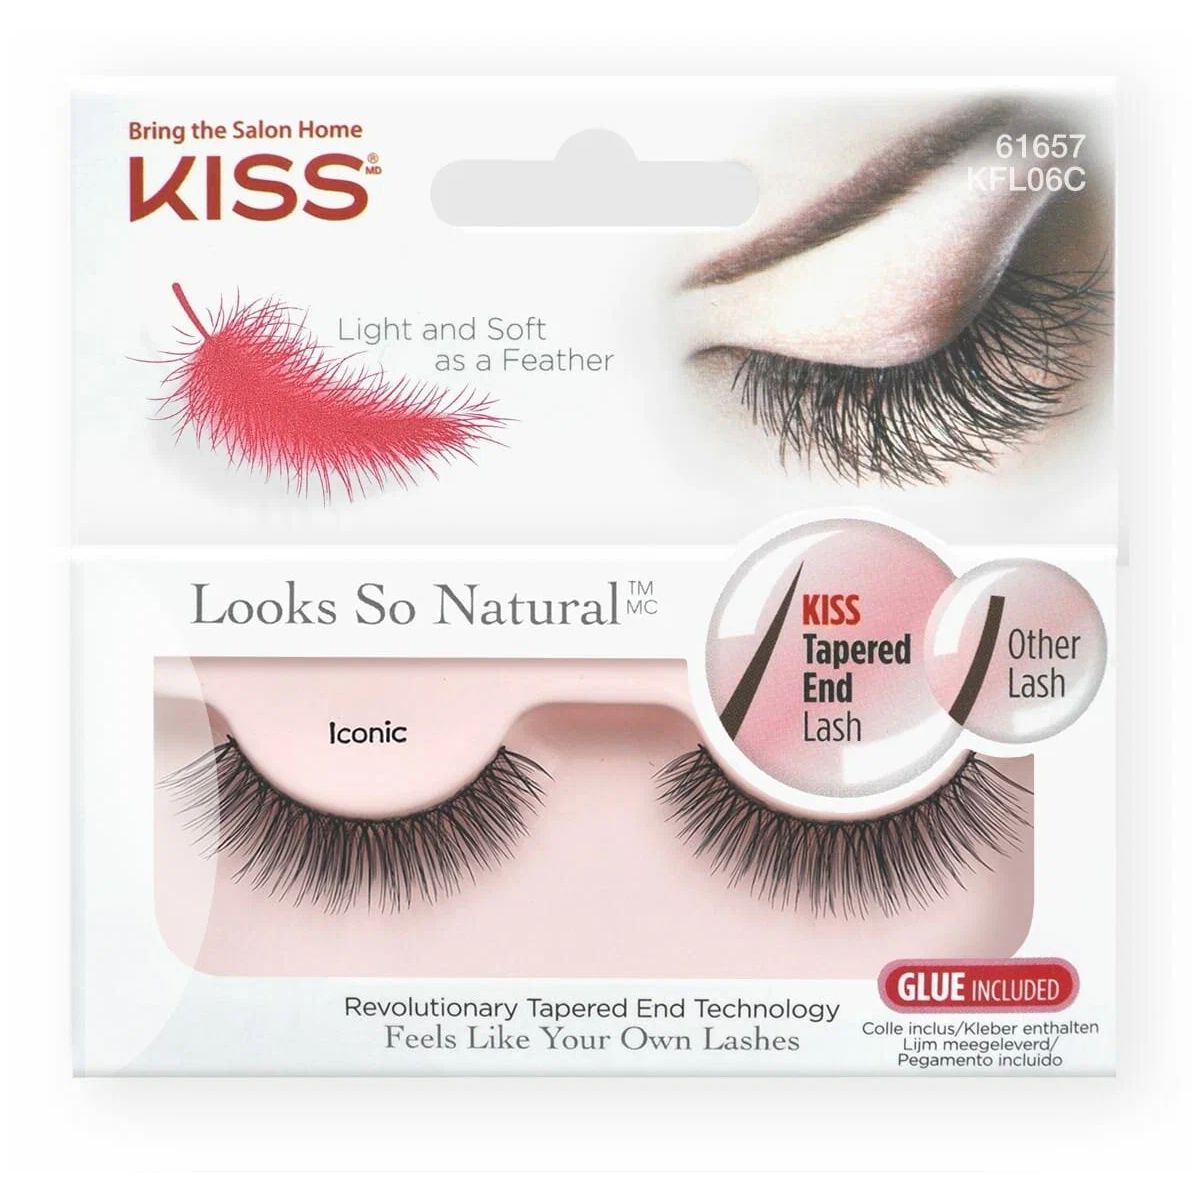 Накладные ресницы KISS Looks so Natural Eyelashes Iconic (KFL06C) 2 шт накладные ресницы ardell natural lashes 117